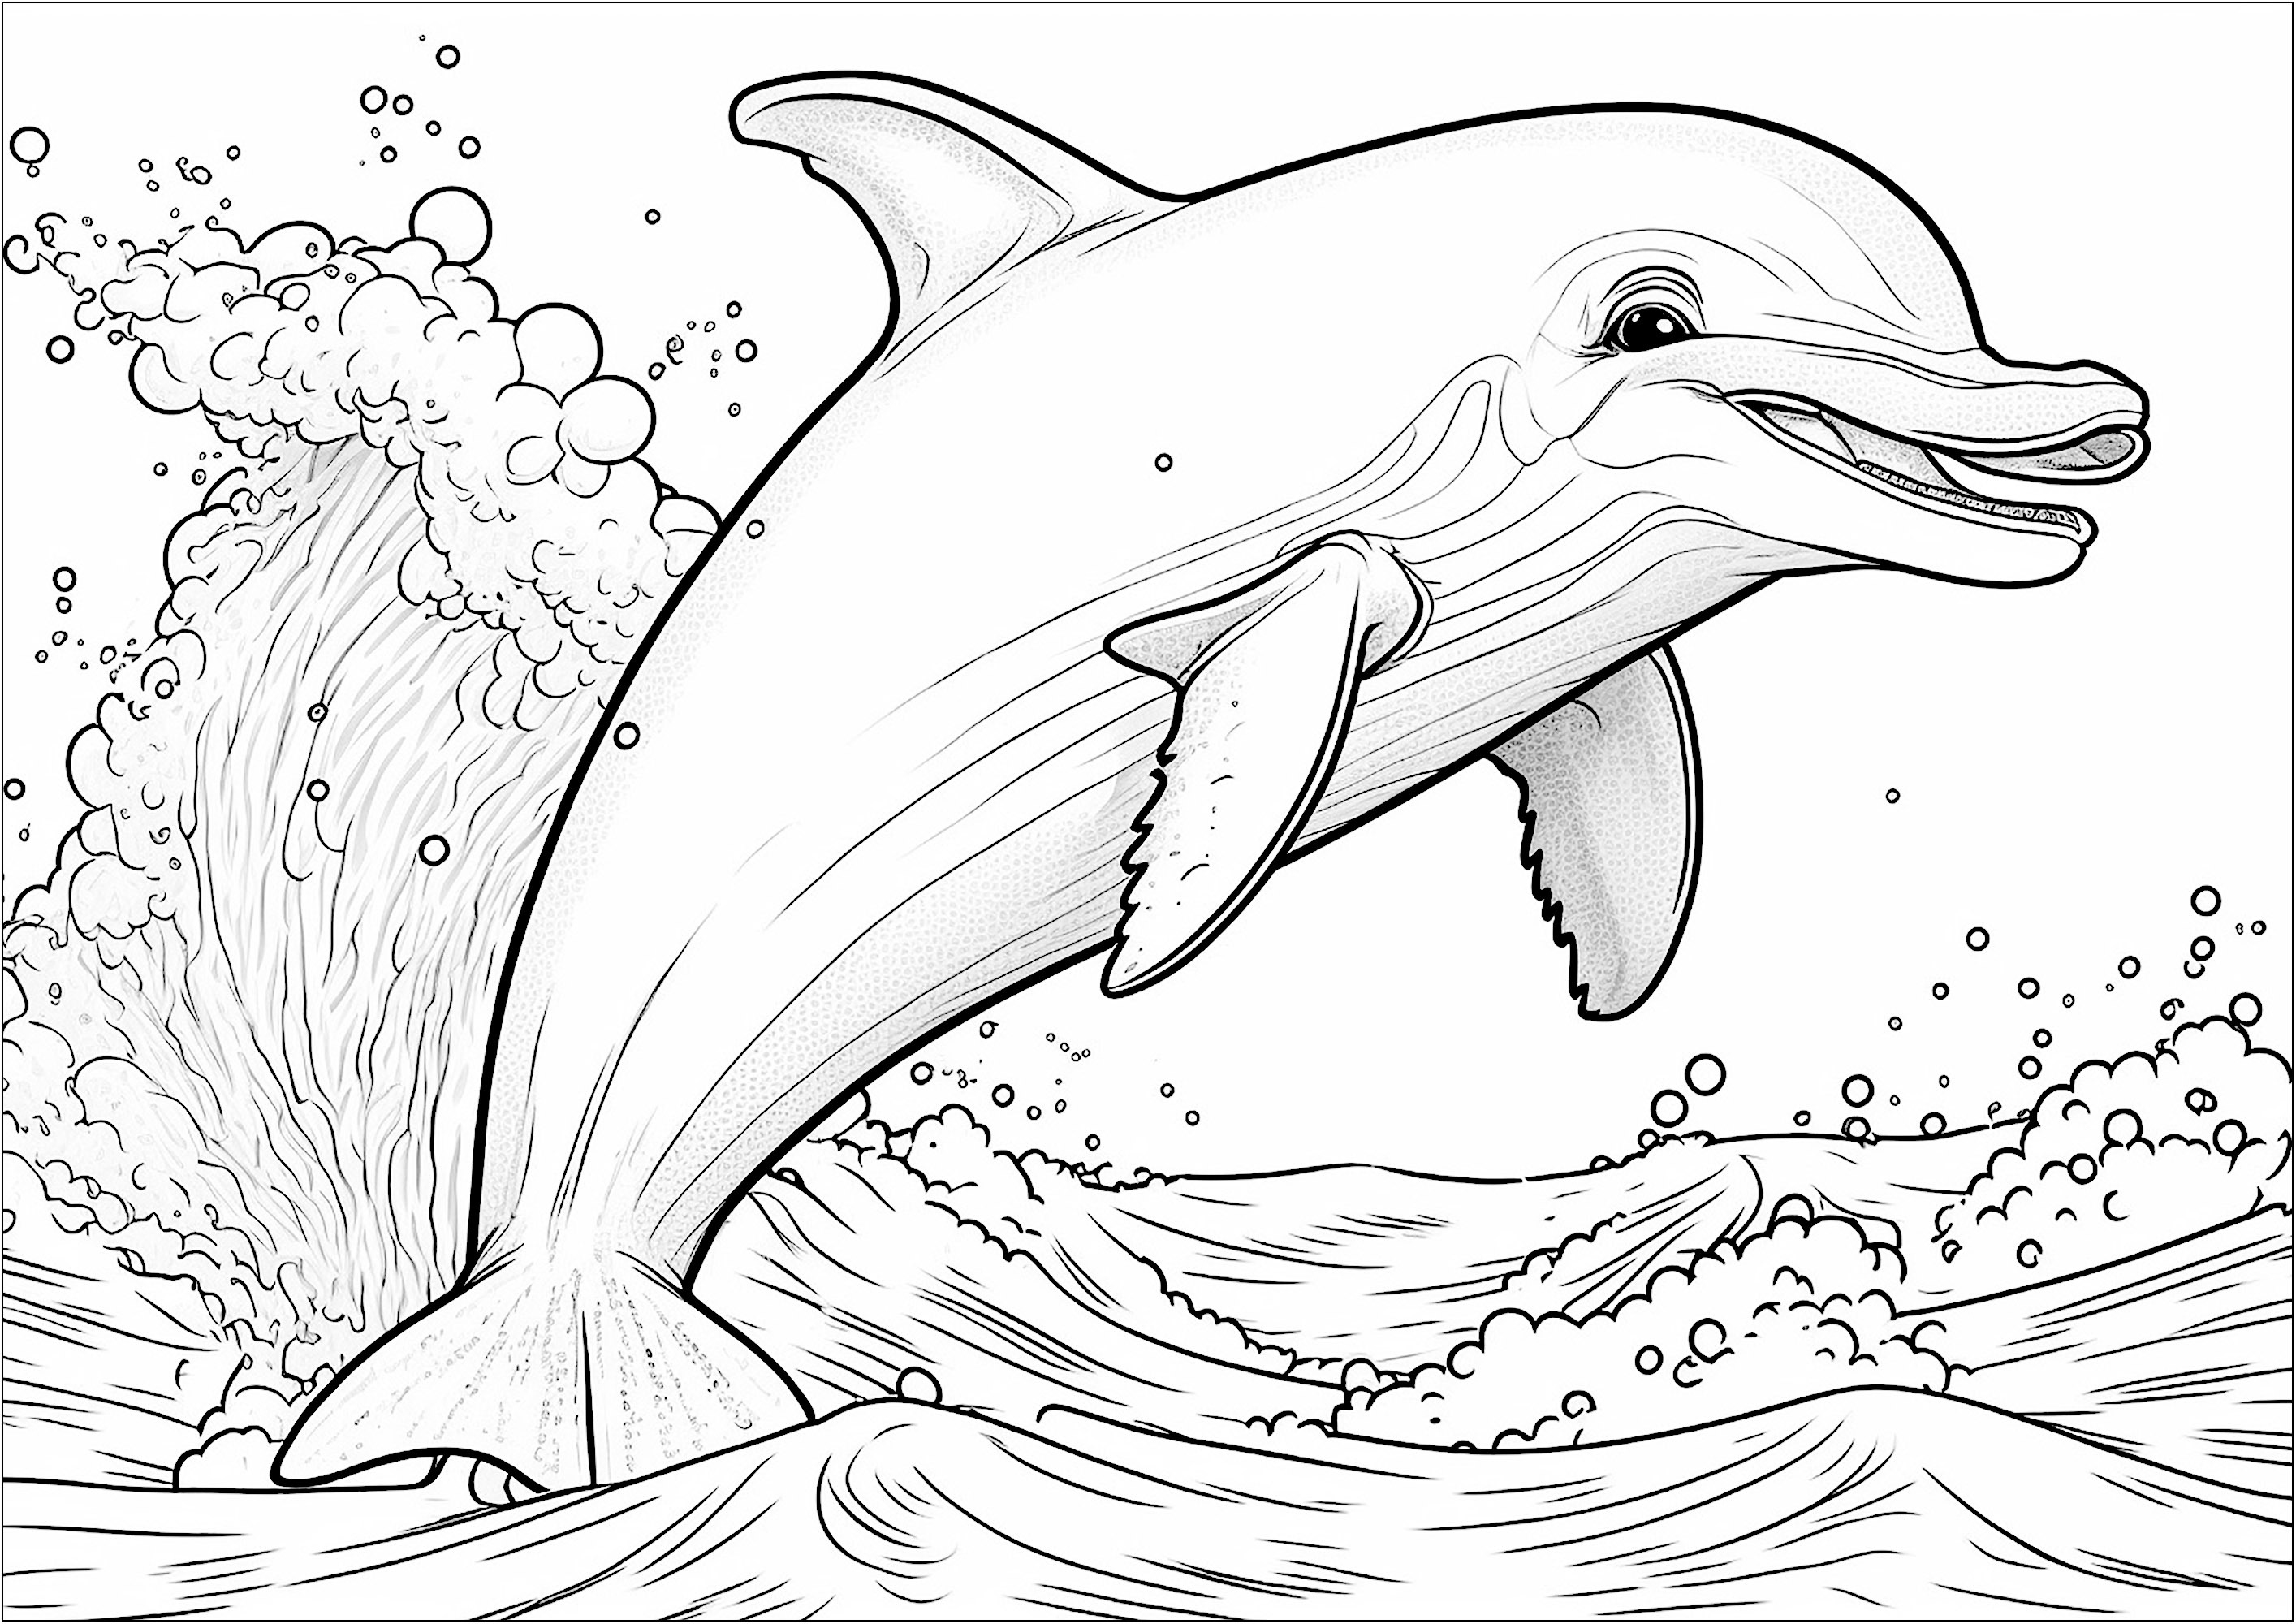 Colorear un delfín saltando fuera del agua. Esta página para colorear es perfecta para los niños amantes de los animales marinos. El dibujo muestra un delfín sonriente saltando alegremente fuera del agua.